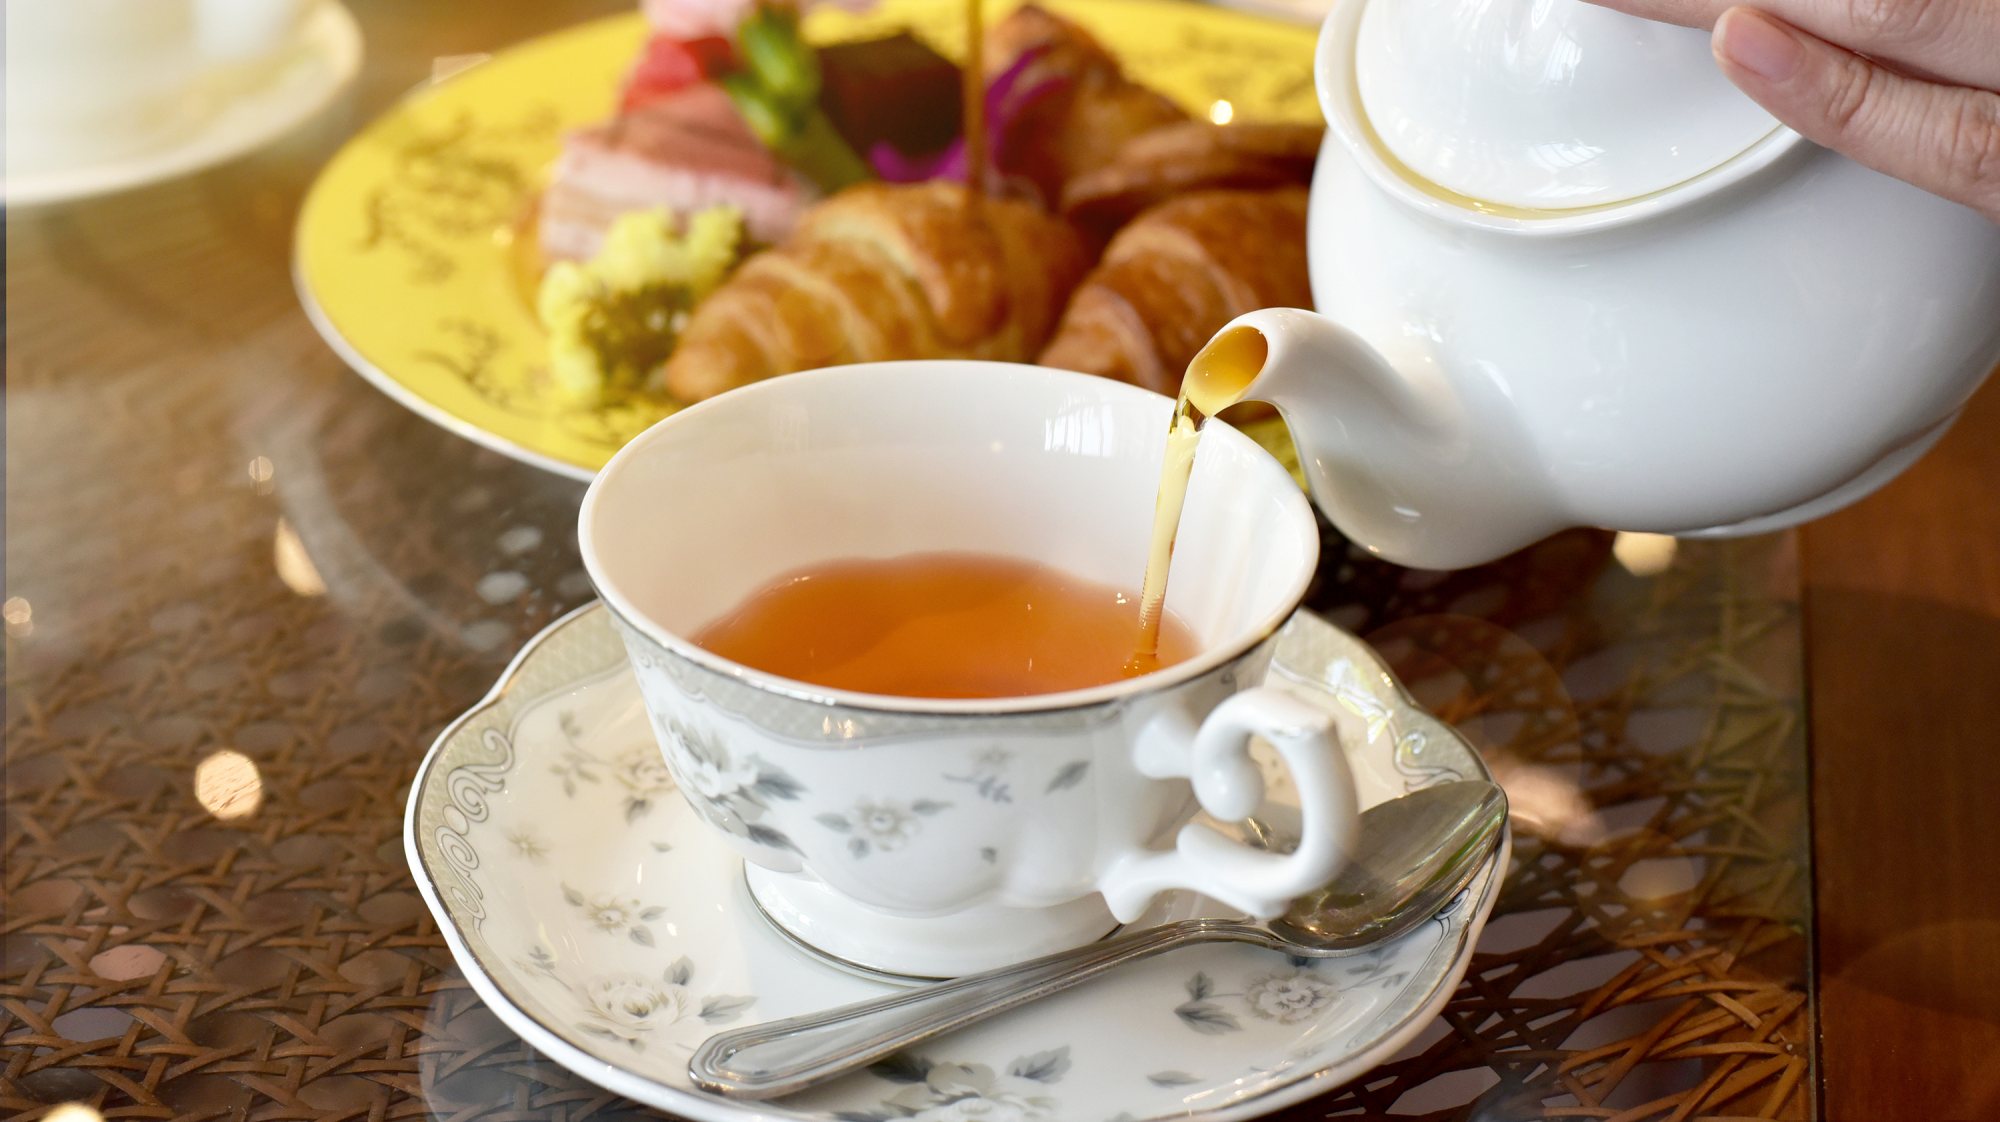 A sugestão do sal provocou indignação entre os amantes do chá no Reino Unido